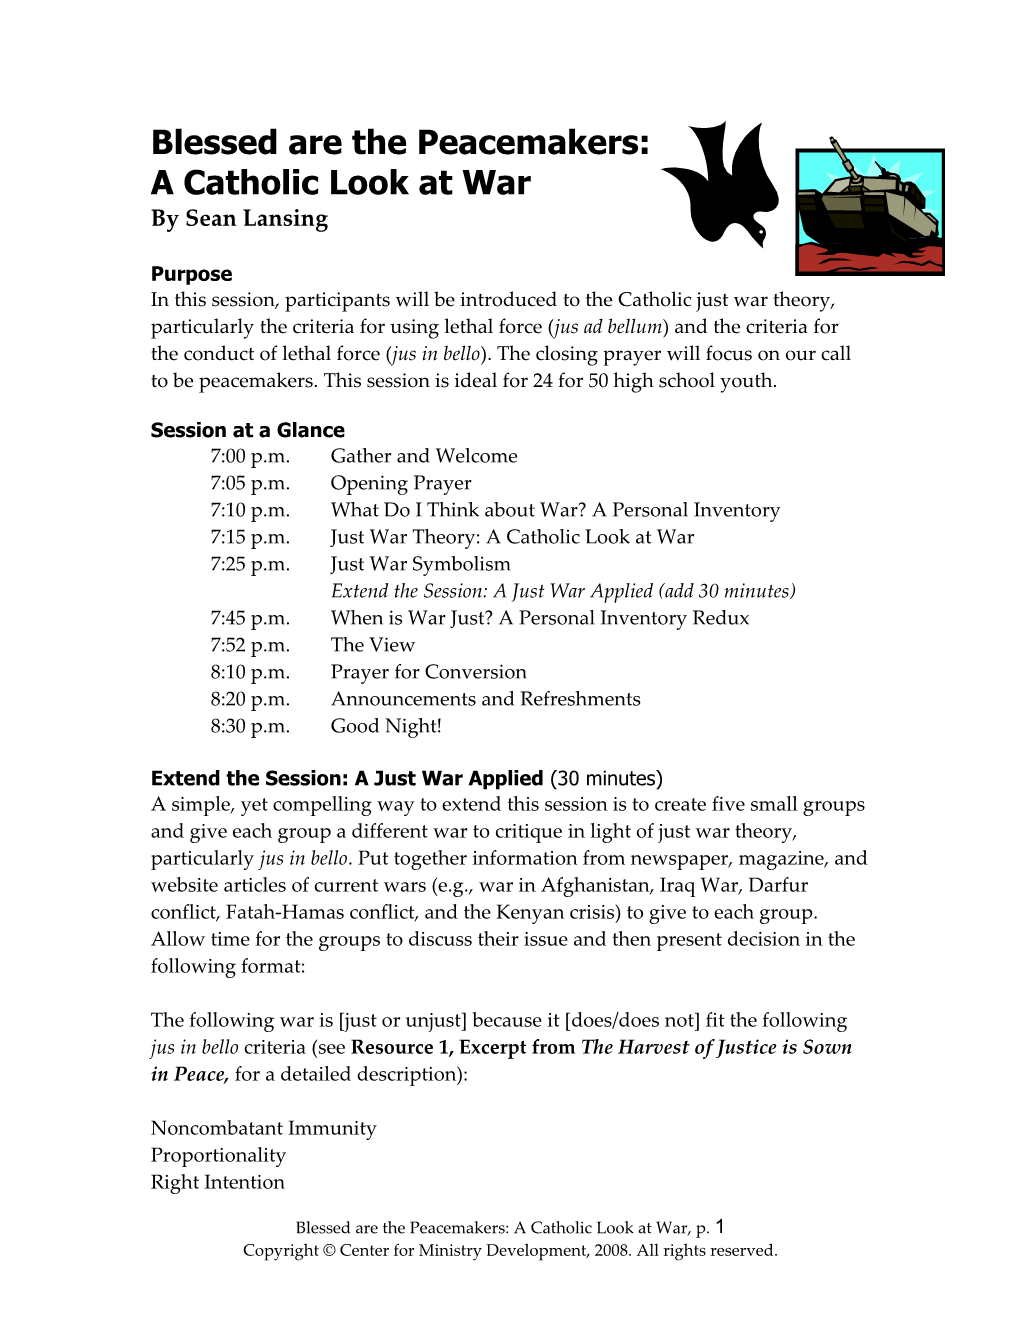 A Catholic Look at War